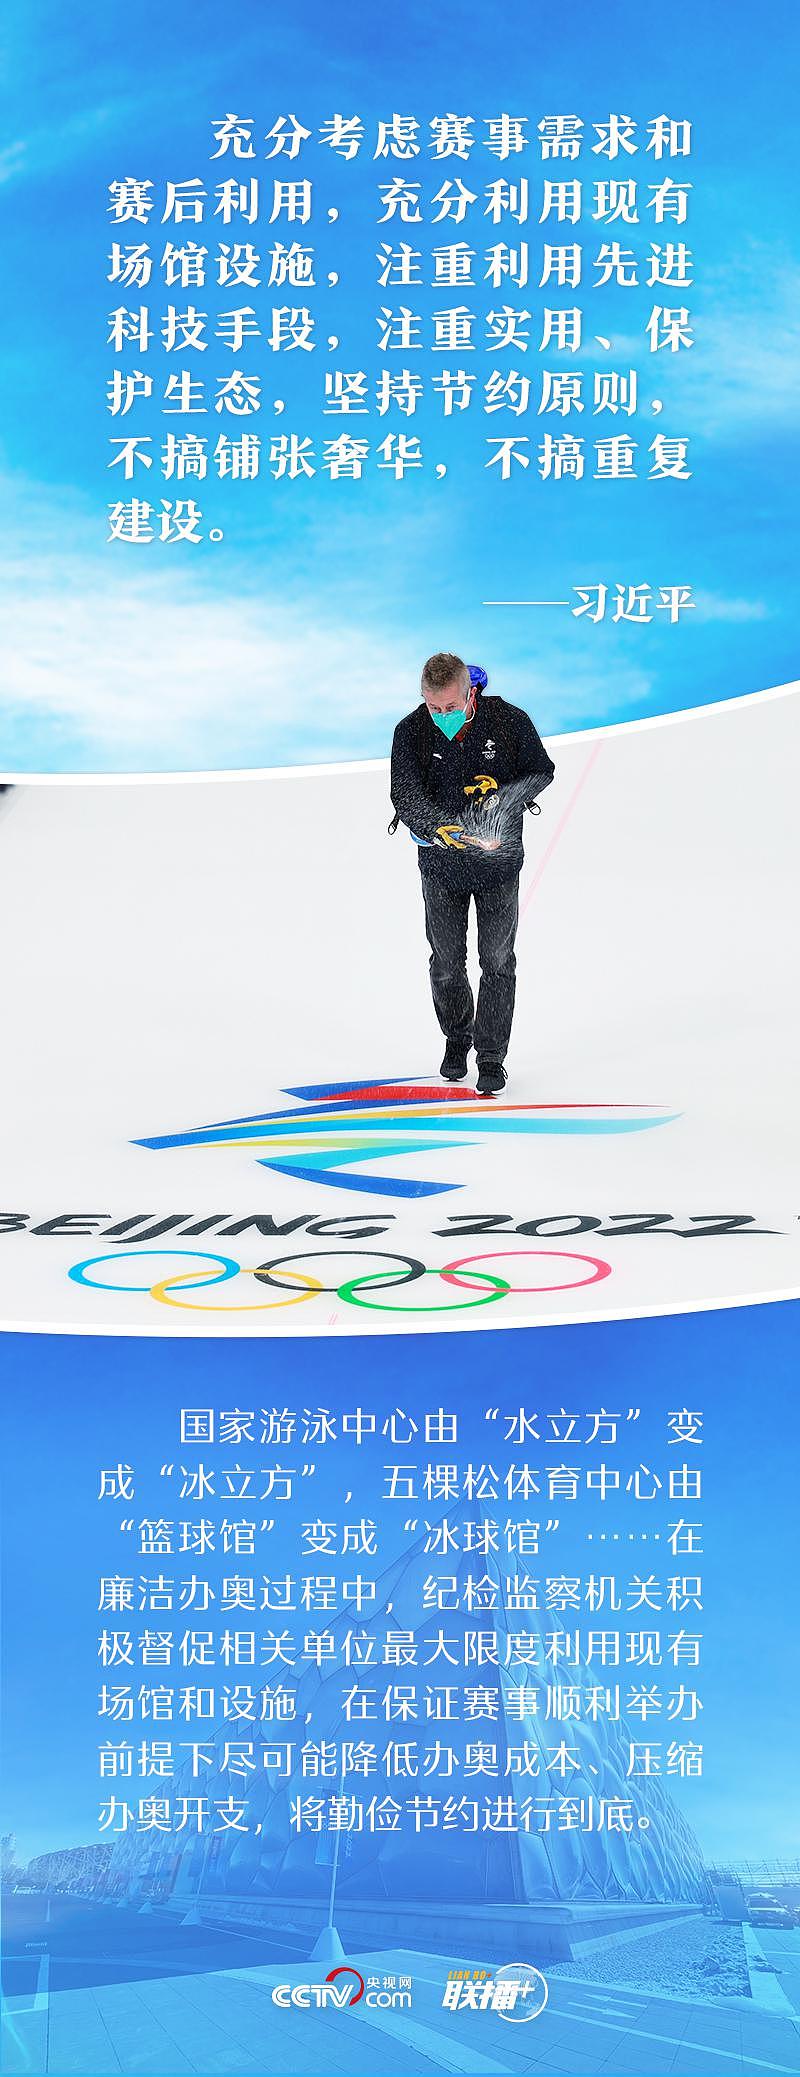 一起向未来｜打造奥运新标杆 跟着总书记共襄冬奥盛会 - 2